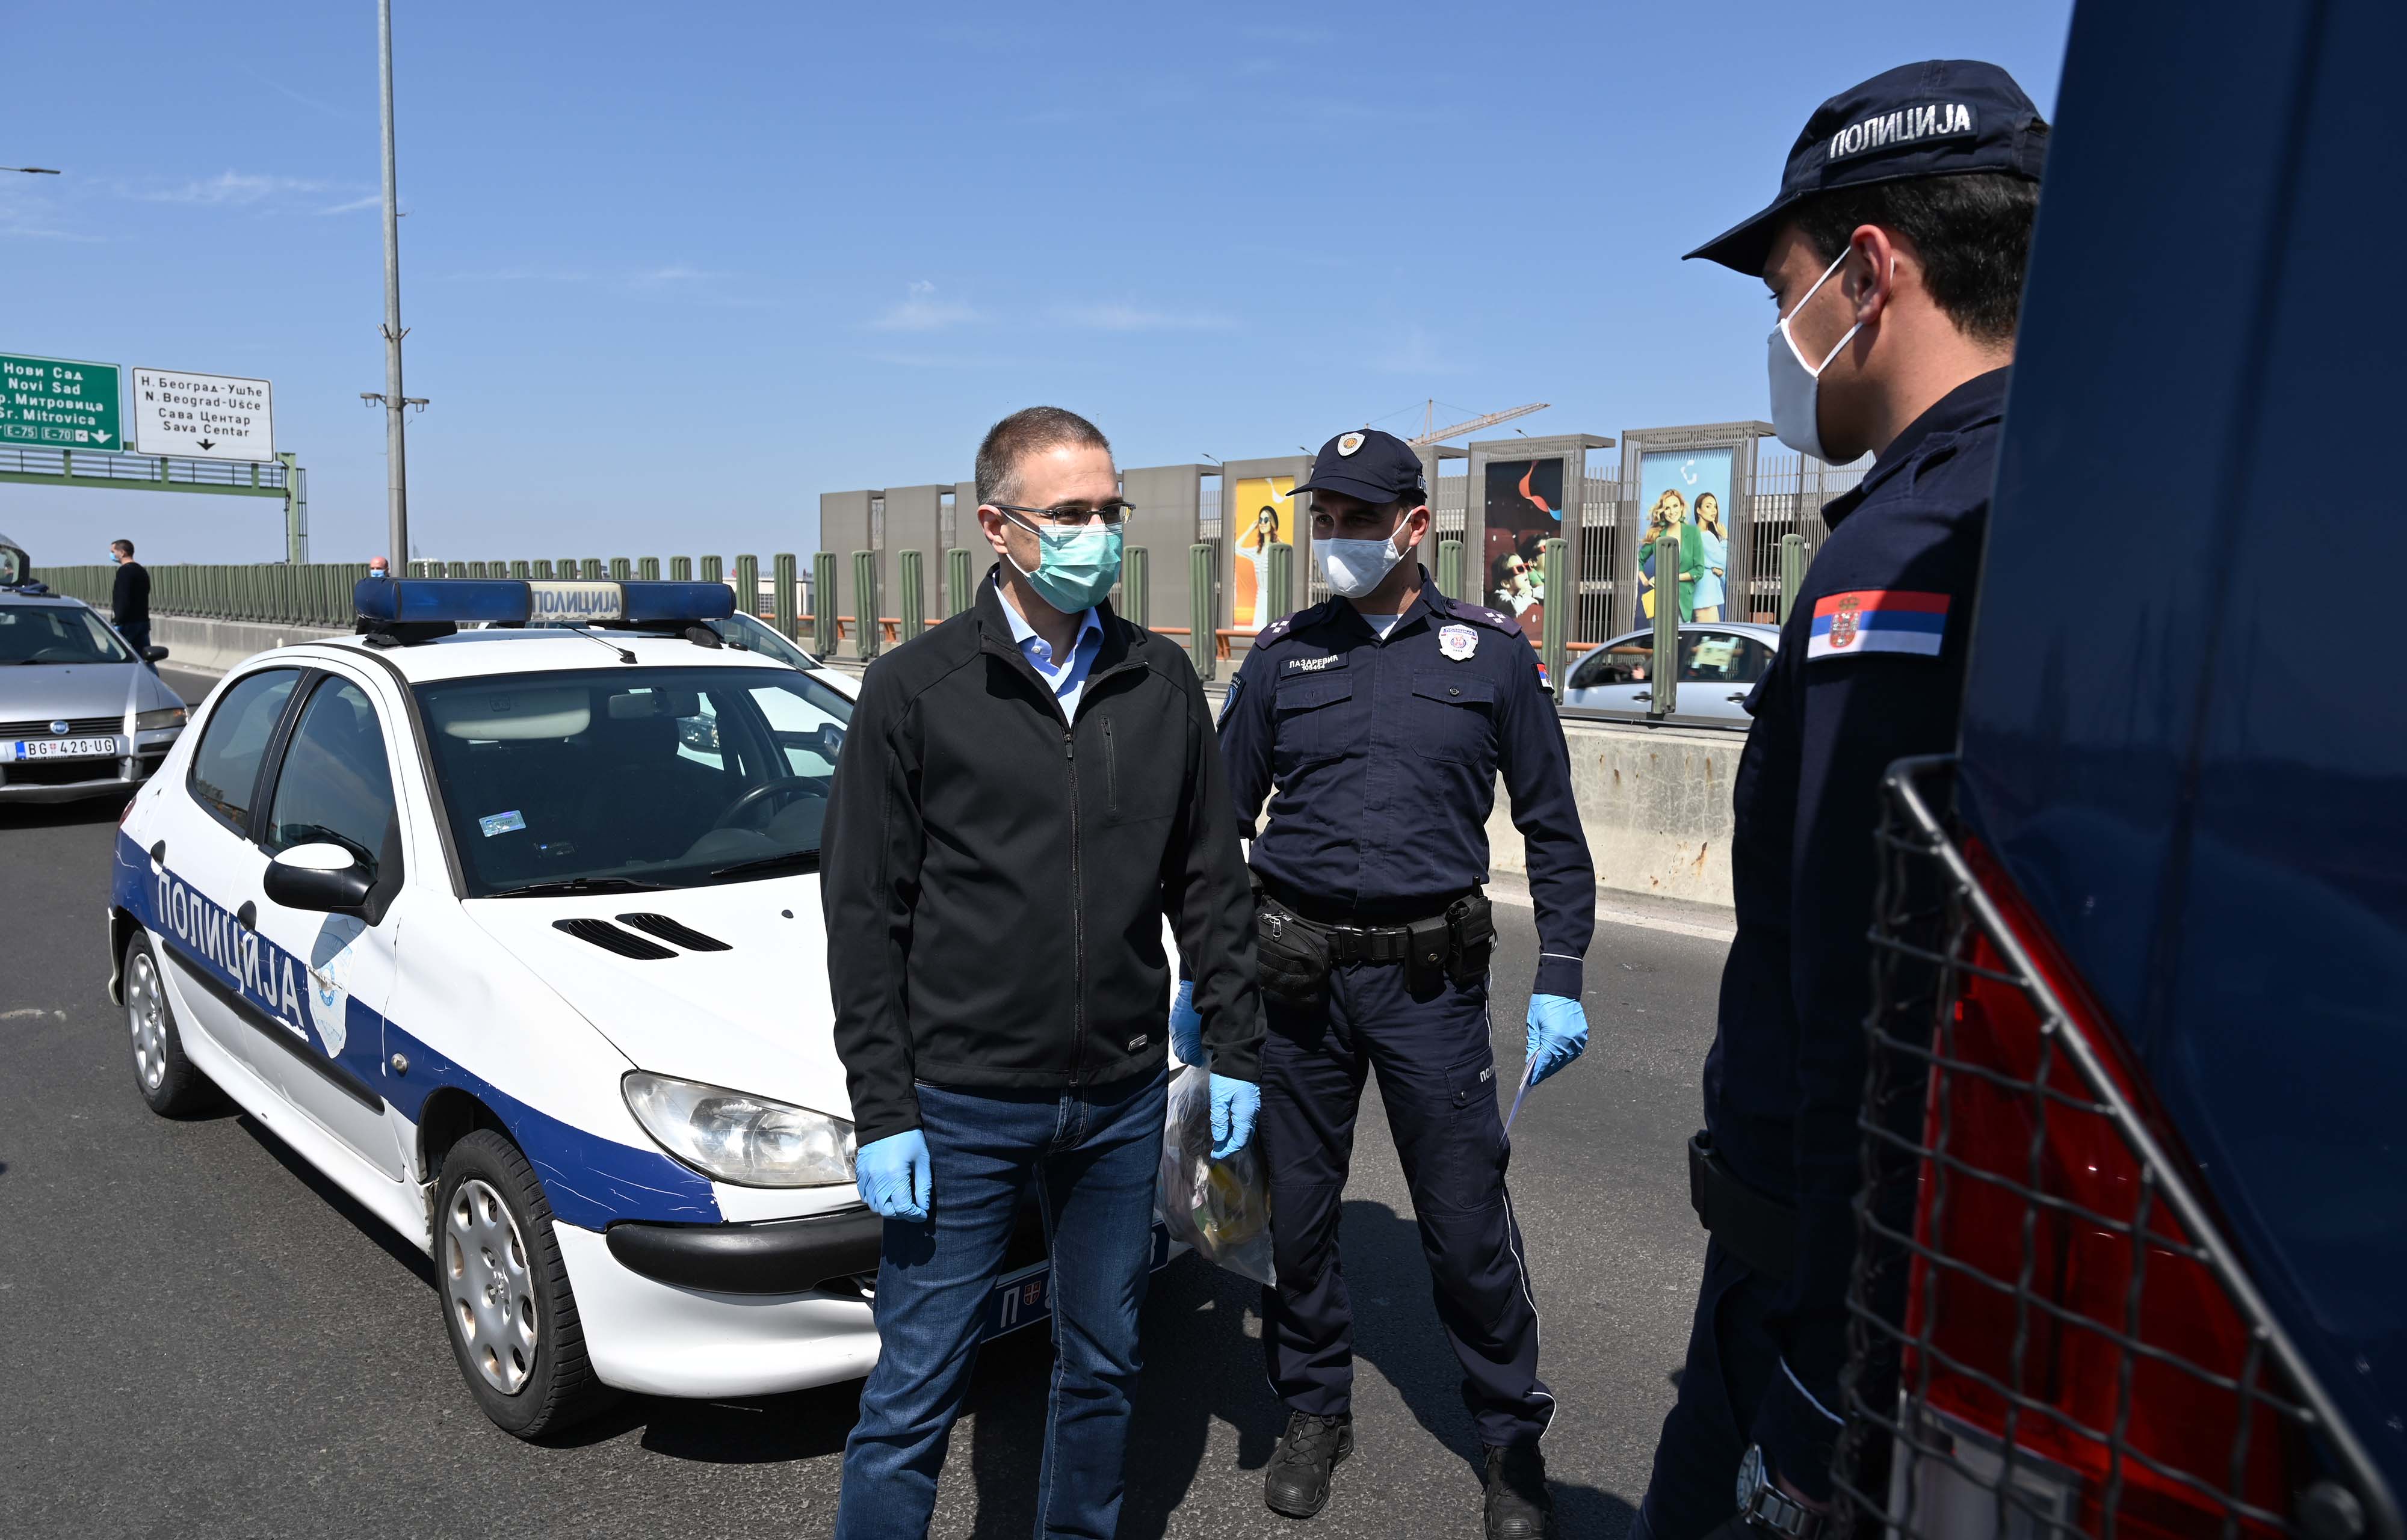 Ministar Stefanović se zahvalio pripadnicima policije na ogromnom požrtvovanju i zalaganju